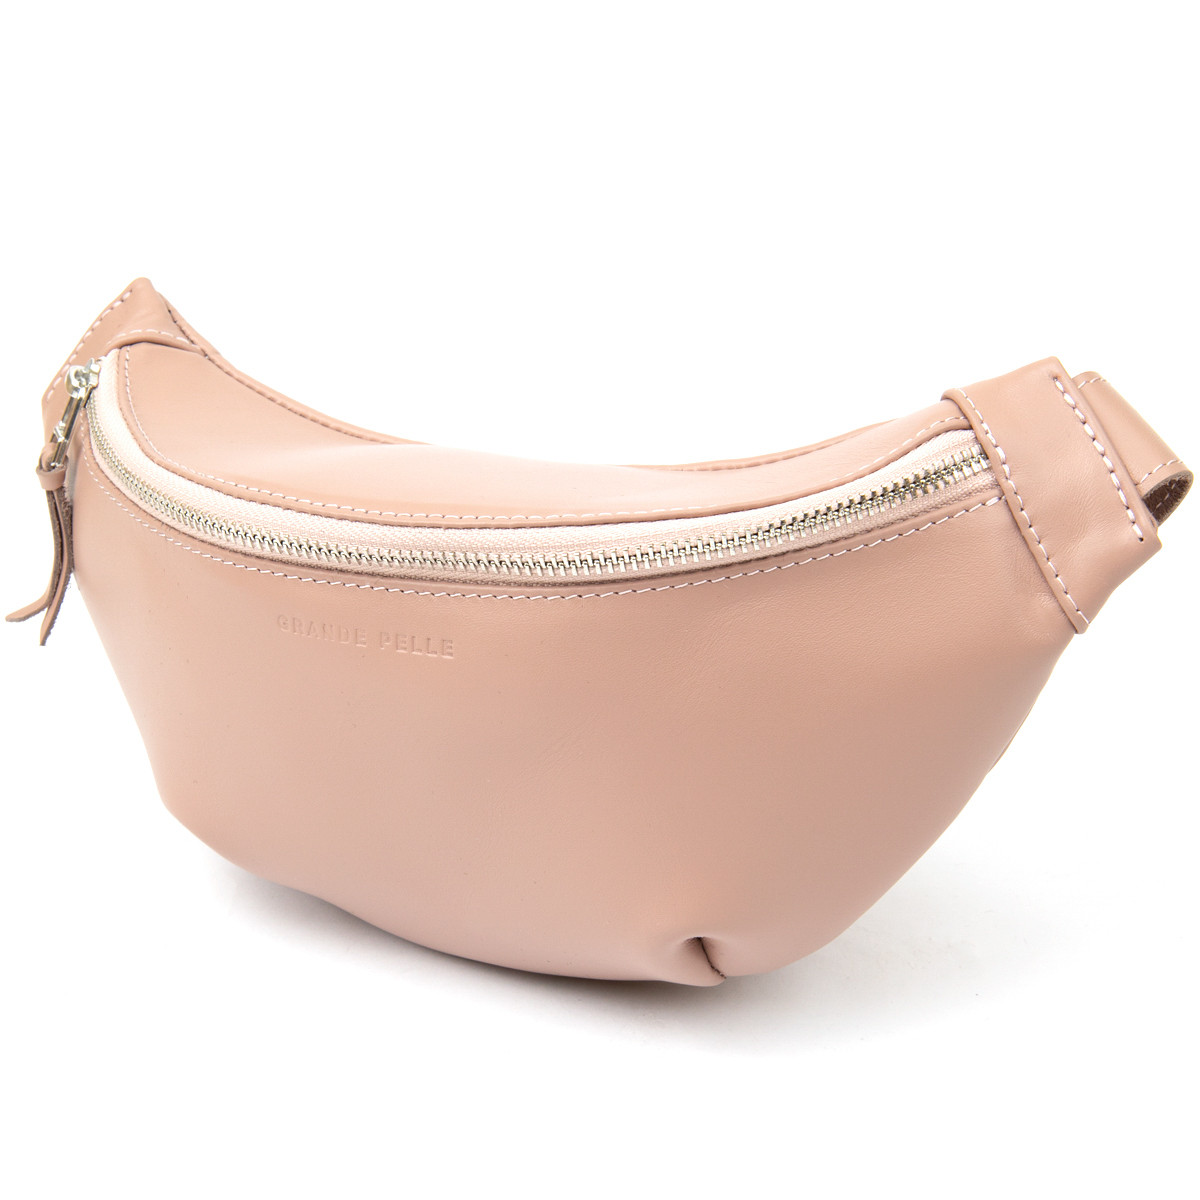 Практична жіноча поясна сумка GRANDE PELLE 11359 Рожевий. Натуральна шкіра